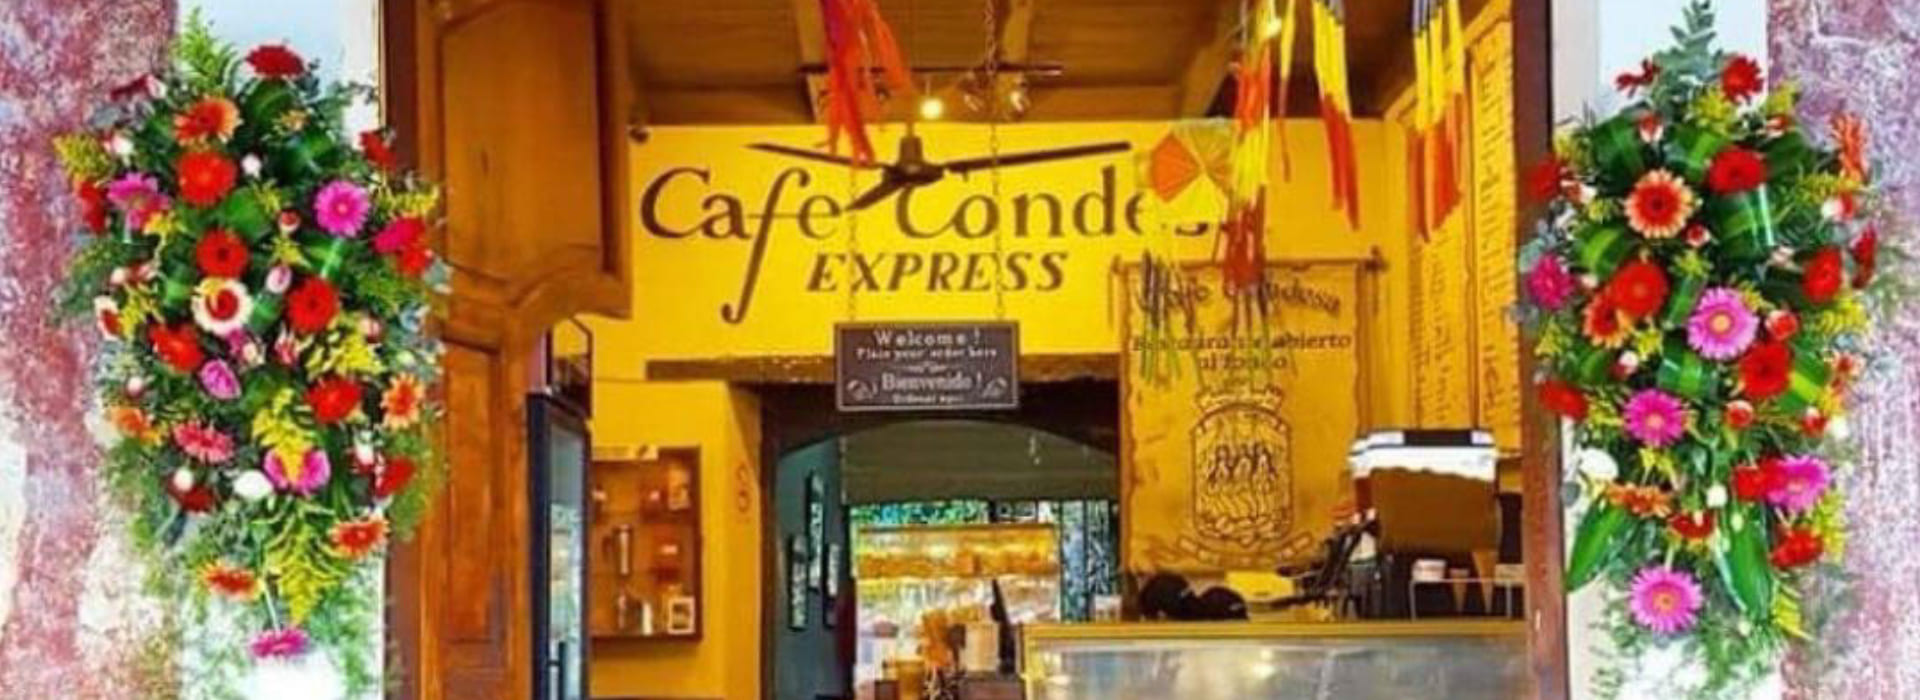 Café_Condesa_BP-1